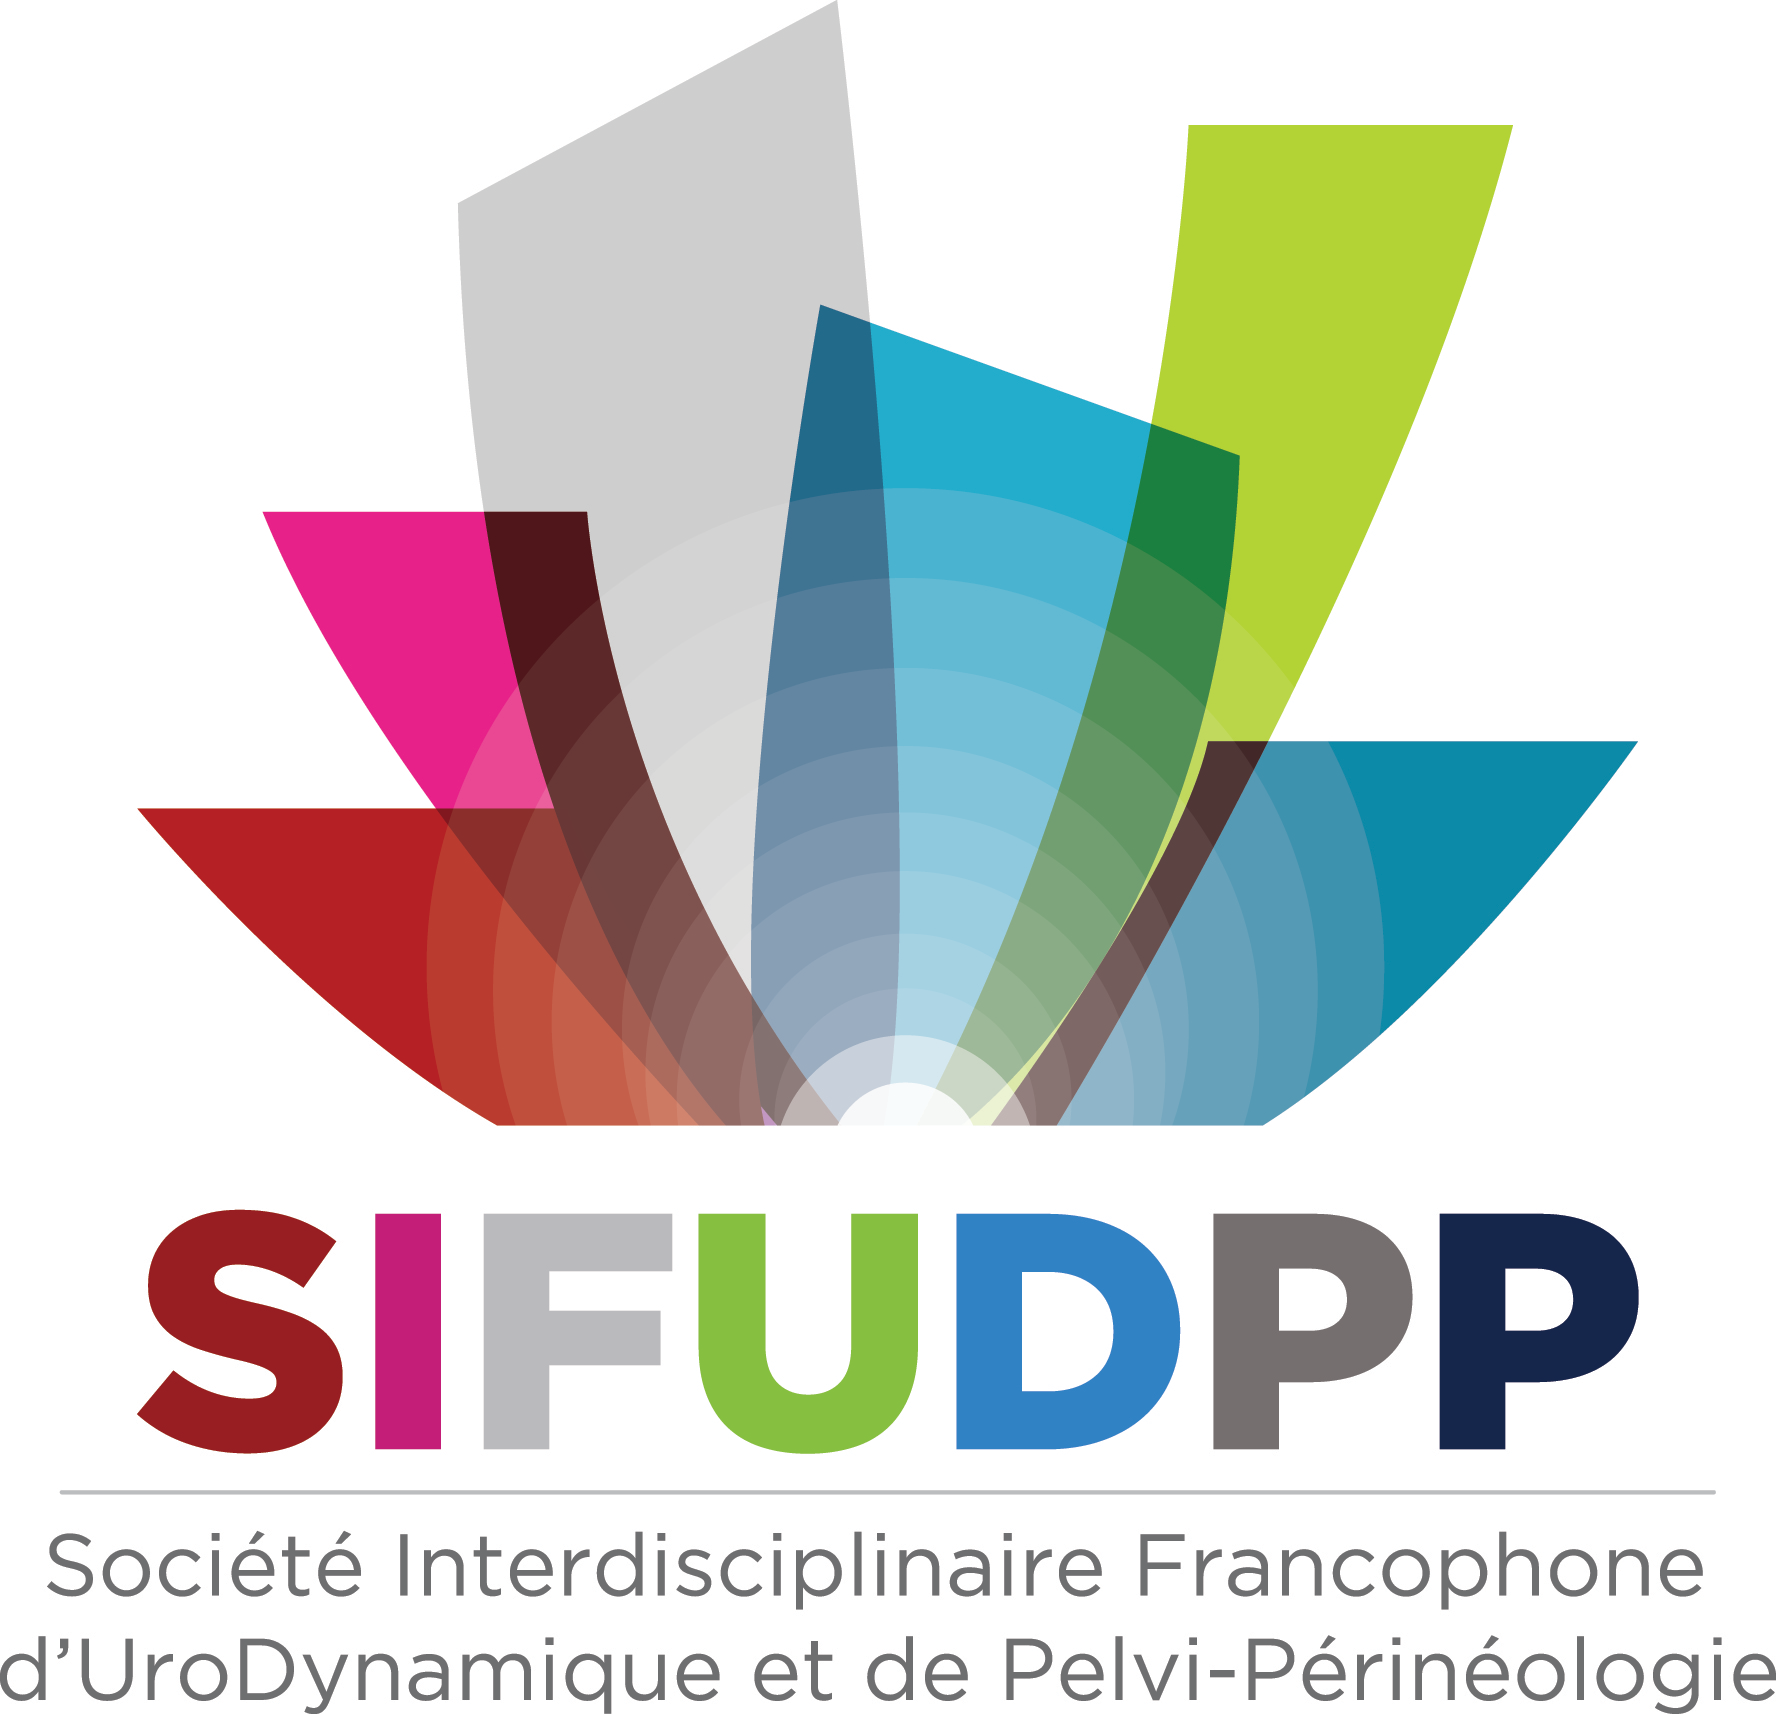 SIFUD-PP Paris 2016 : Le patient à risque médico-légal : comment le dépister et se prémunir